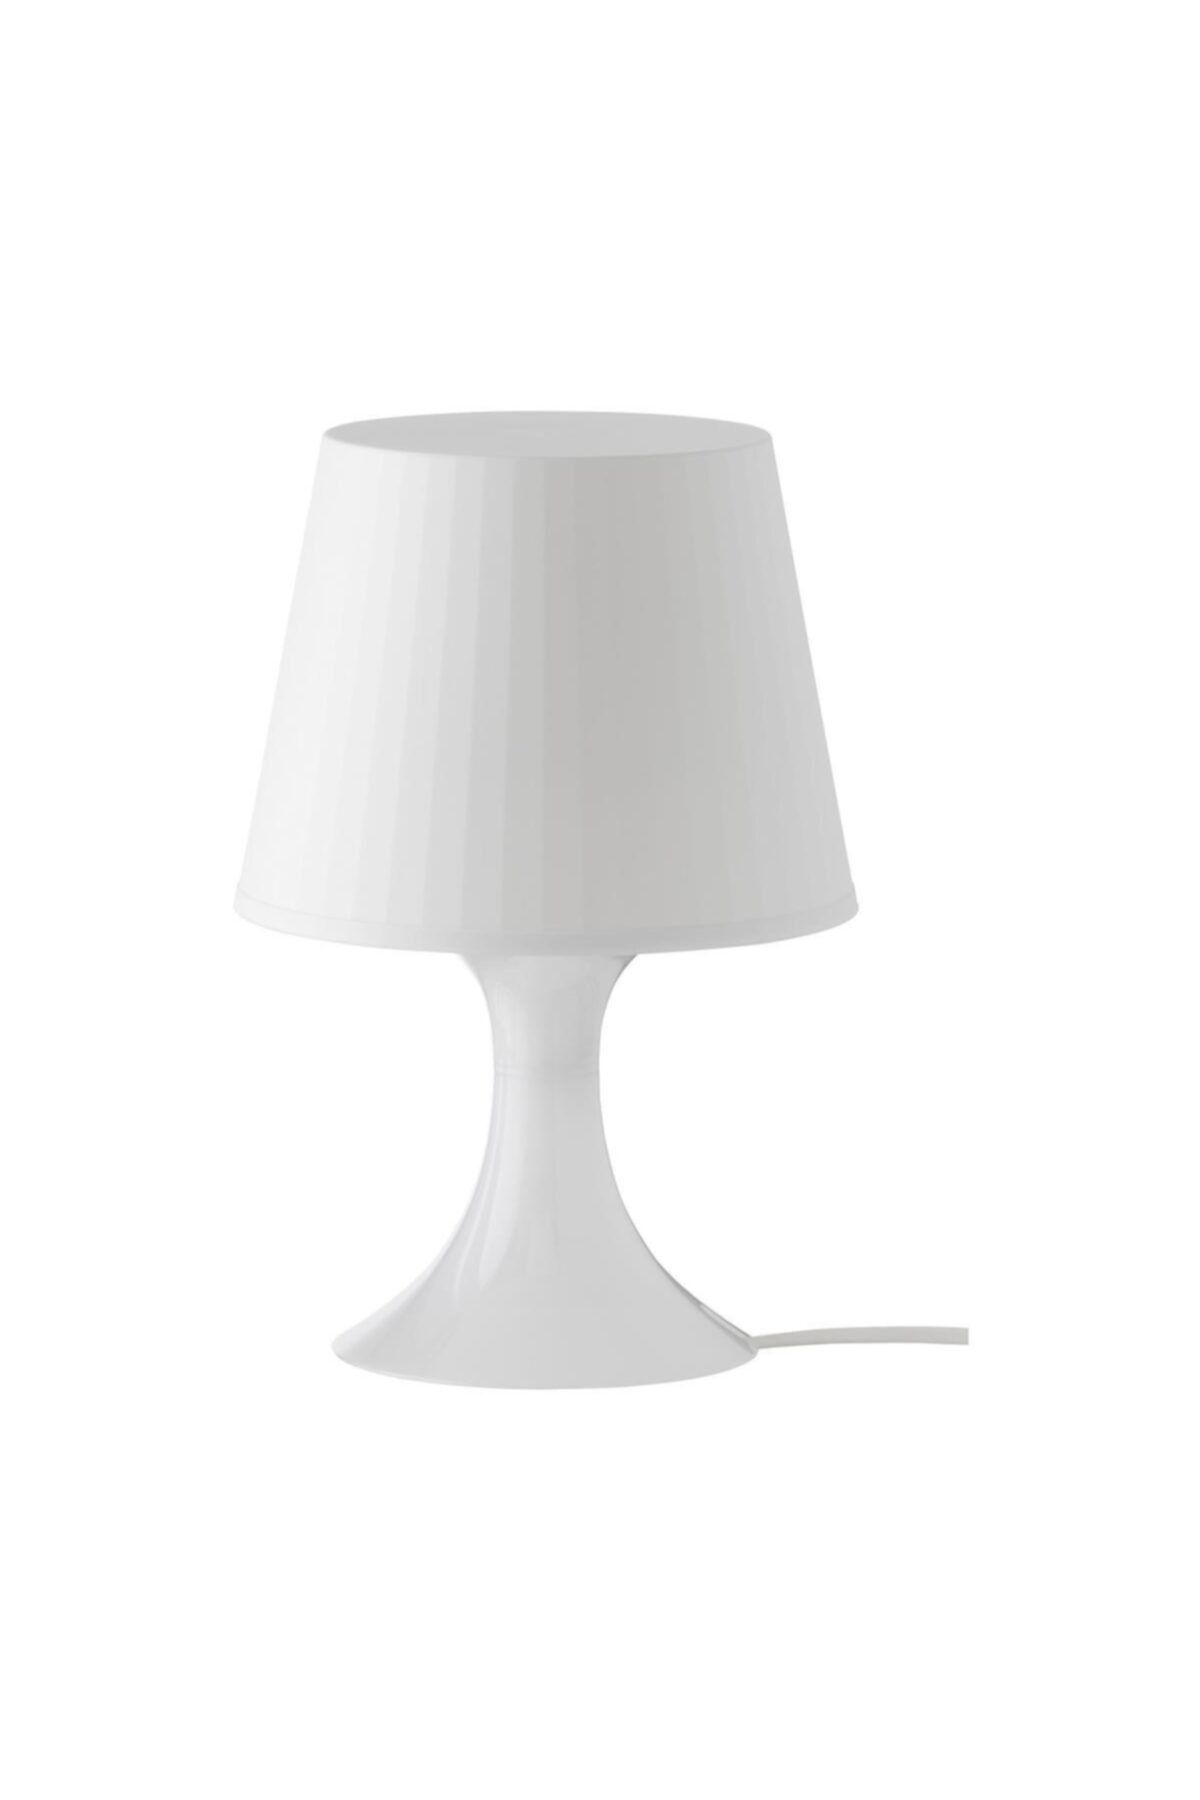 BARBUN Masa Lambası Lampan Lamba Abajur Beyaz Renk- Ücretsiz Kargo